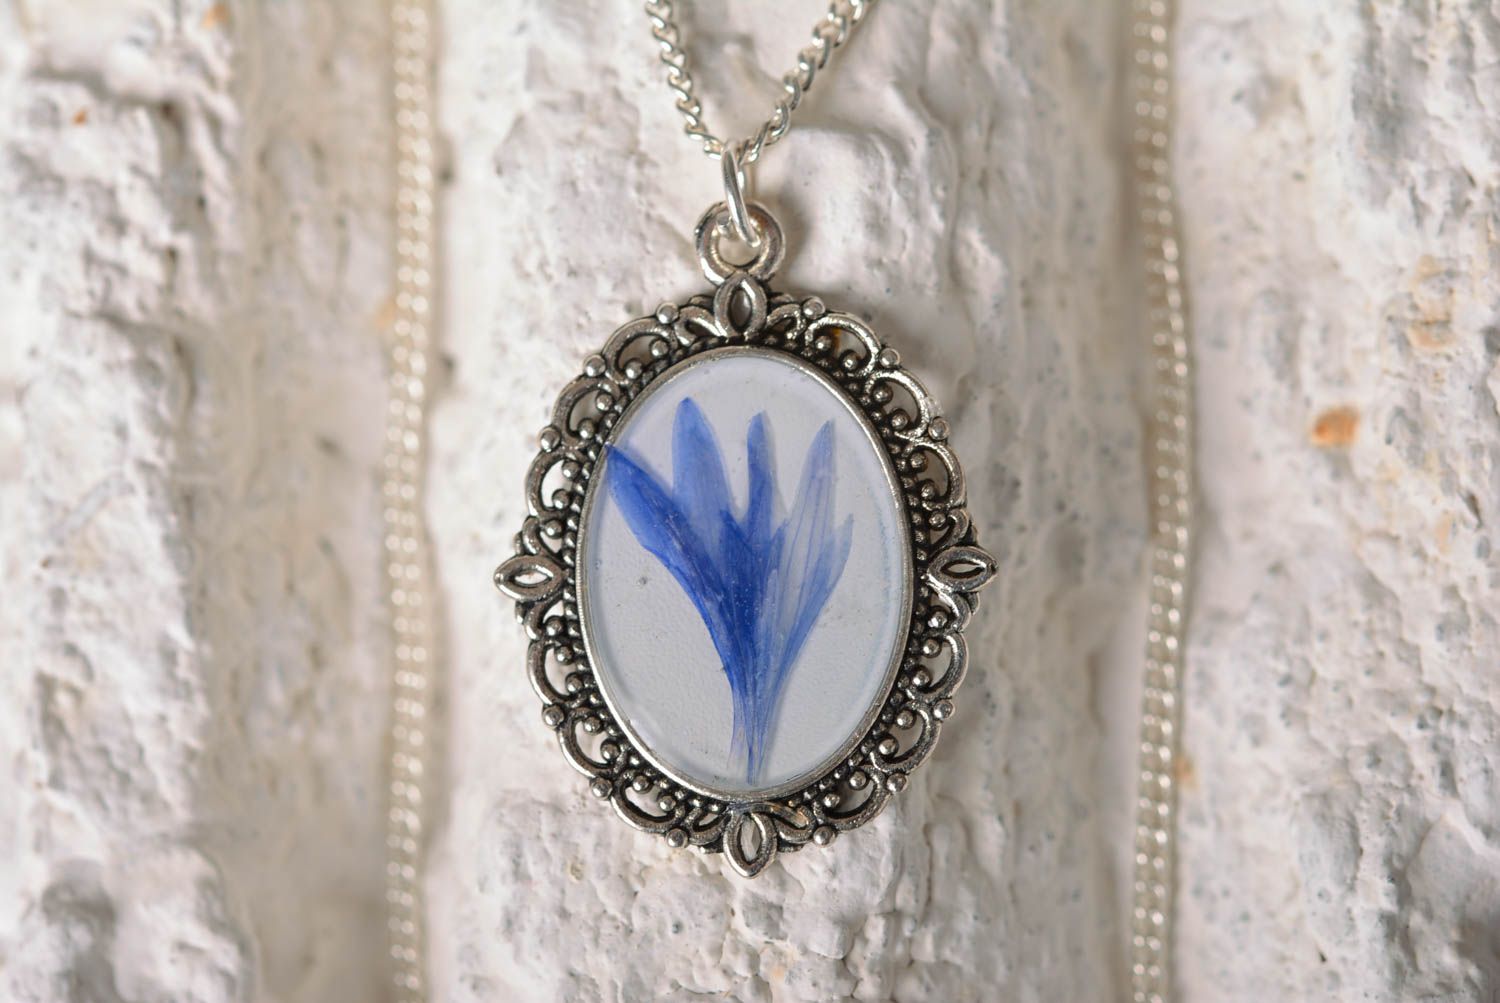 Vintage botanic pendant handmade pendant with natural flowers botanic jewelry photo 1